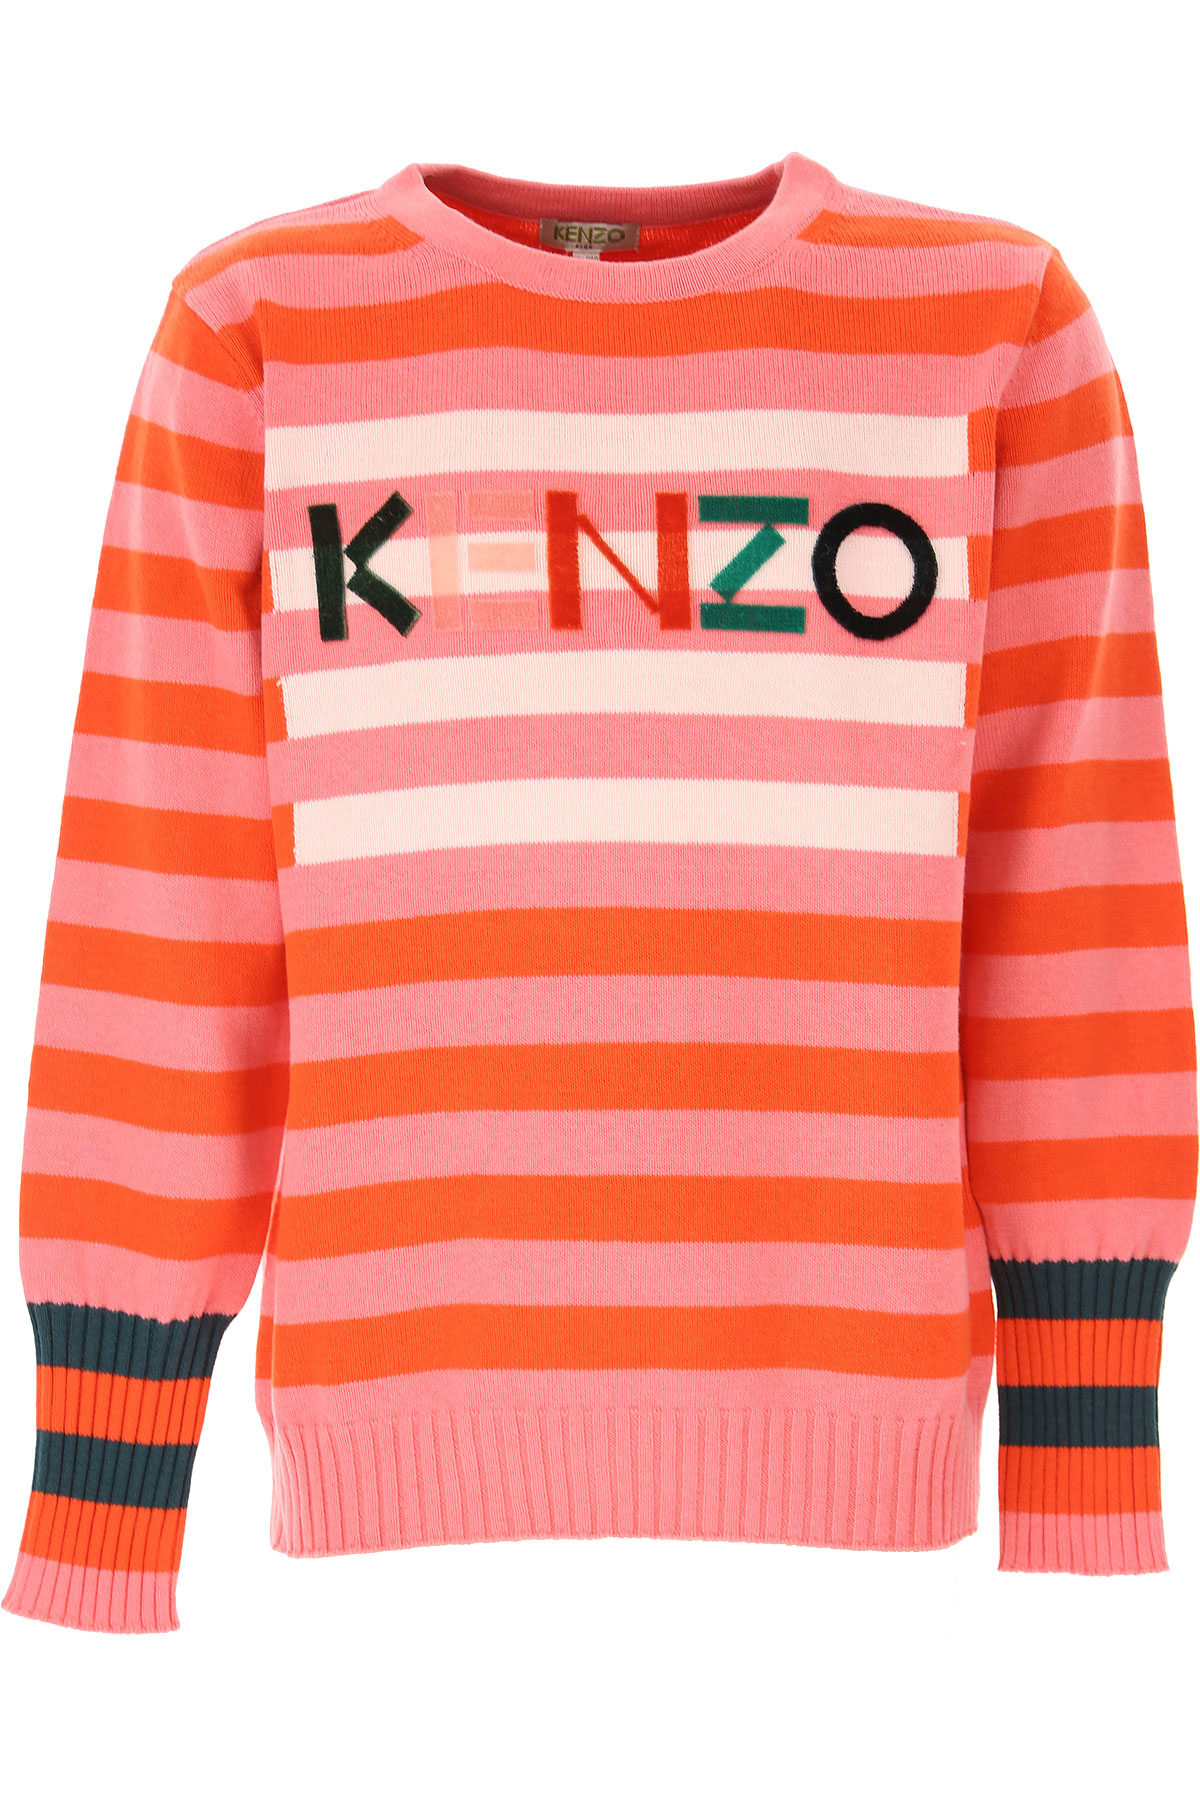 Kenzo Kinder Pullover für Mädchen Günstig im Sale, Baumwolle, 2017, 10Y 14Y